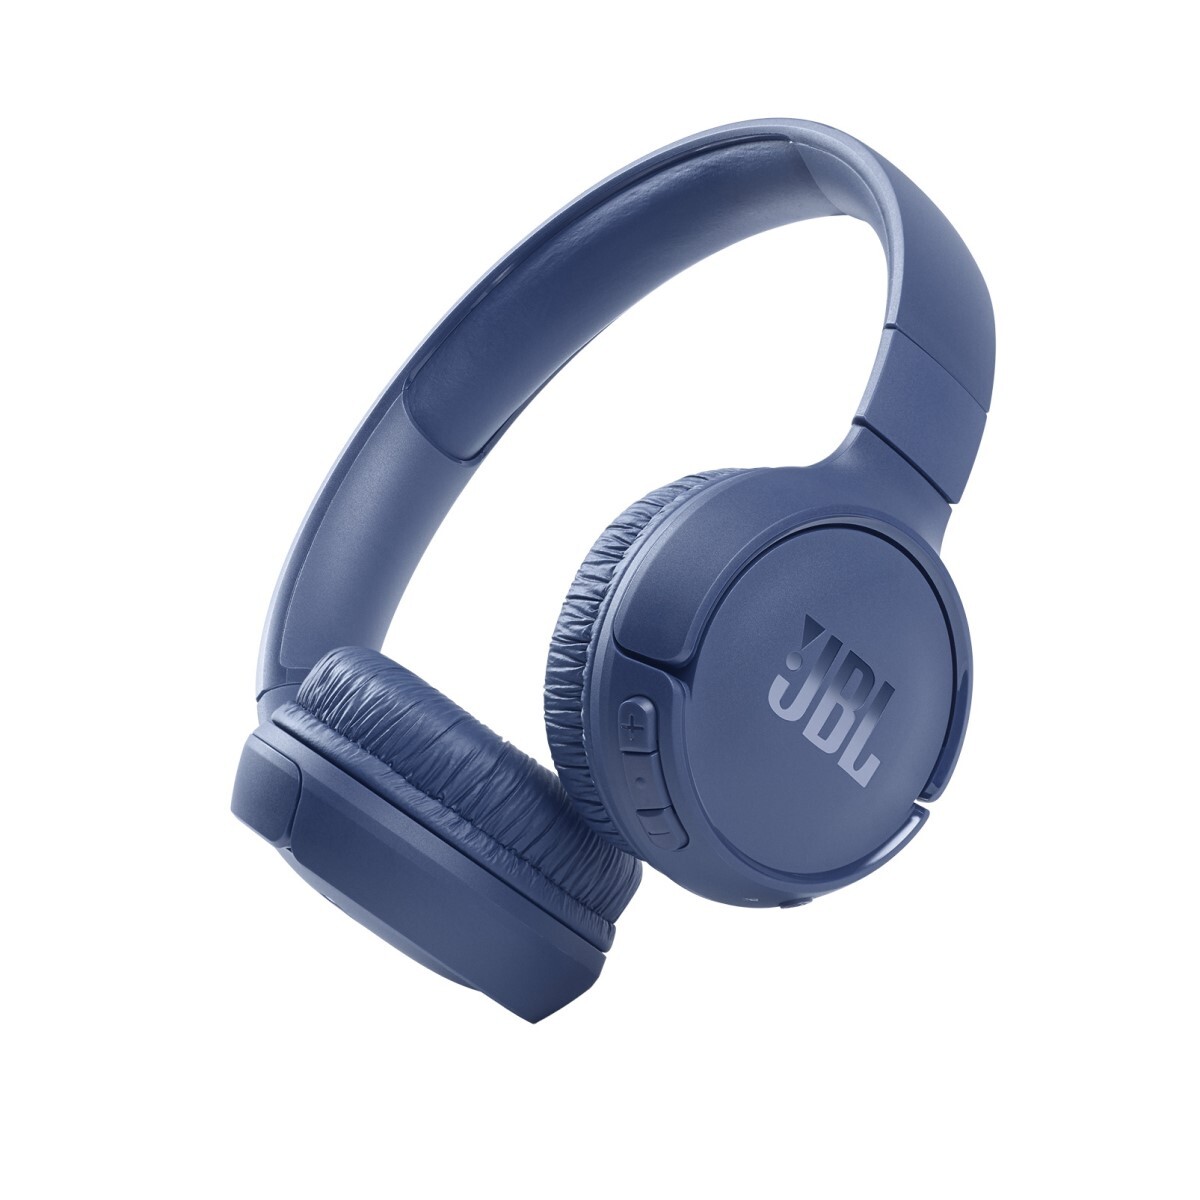 Jbl t510 auricular on-ear bluetooth Azul